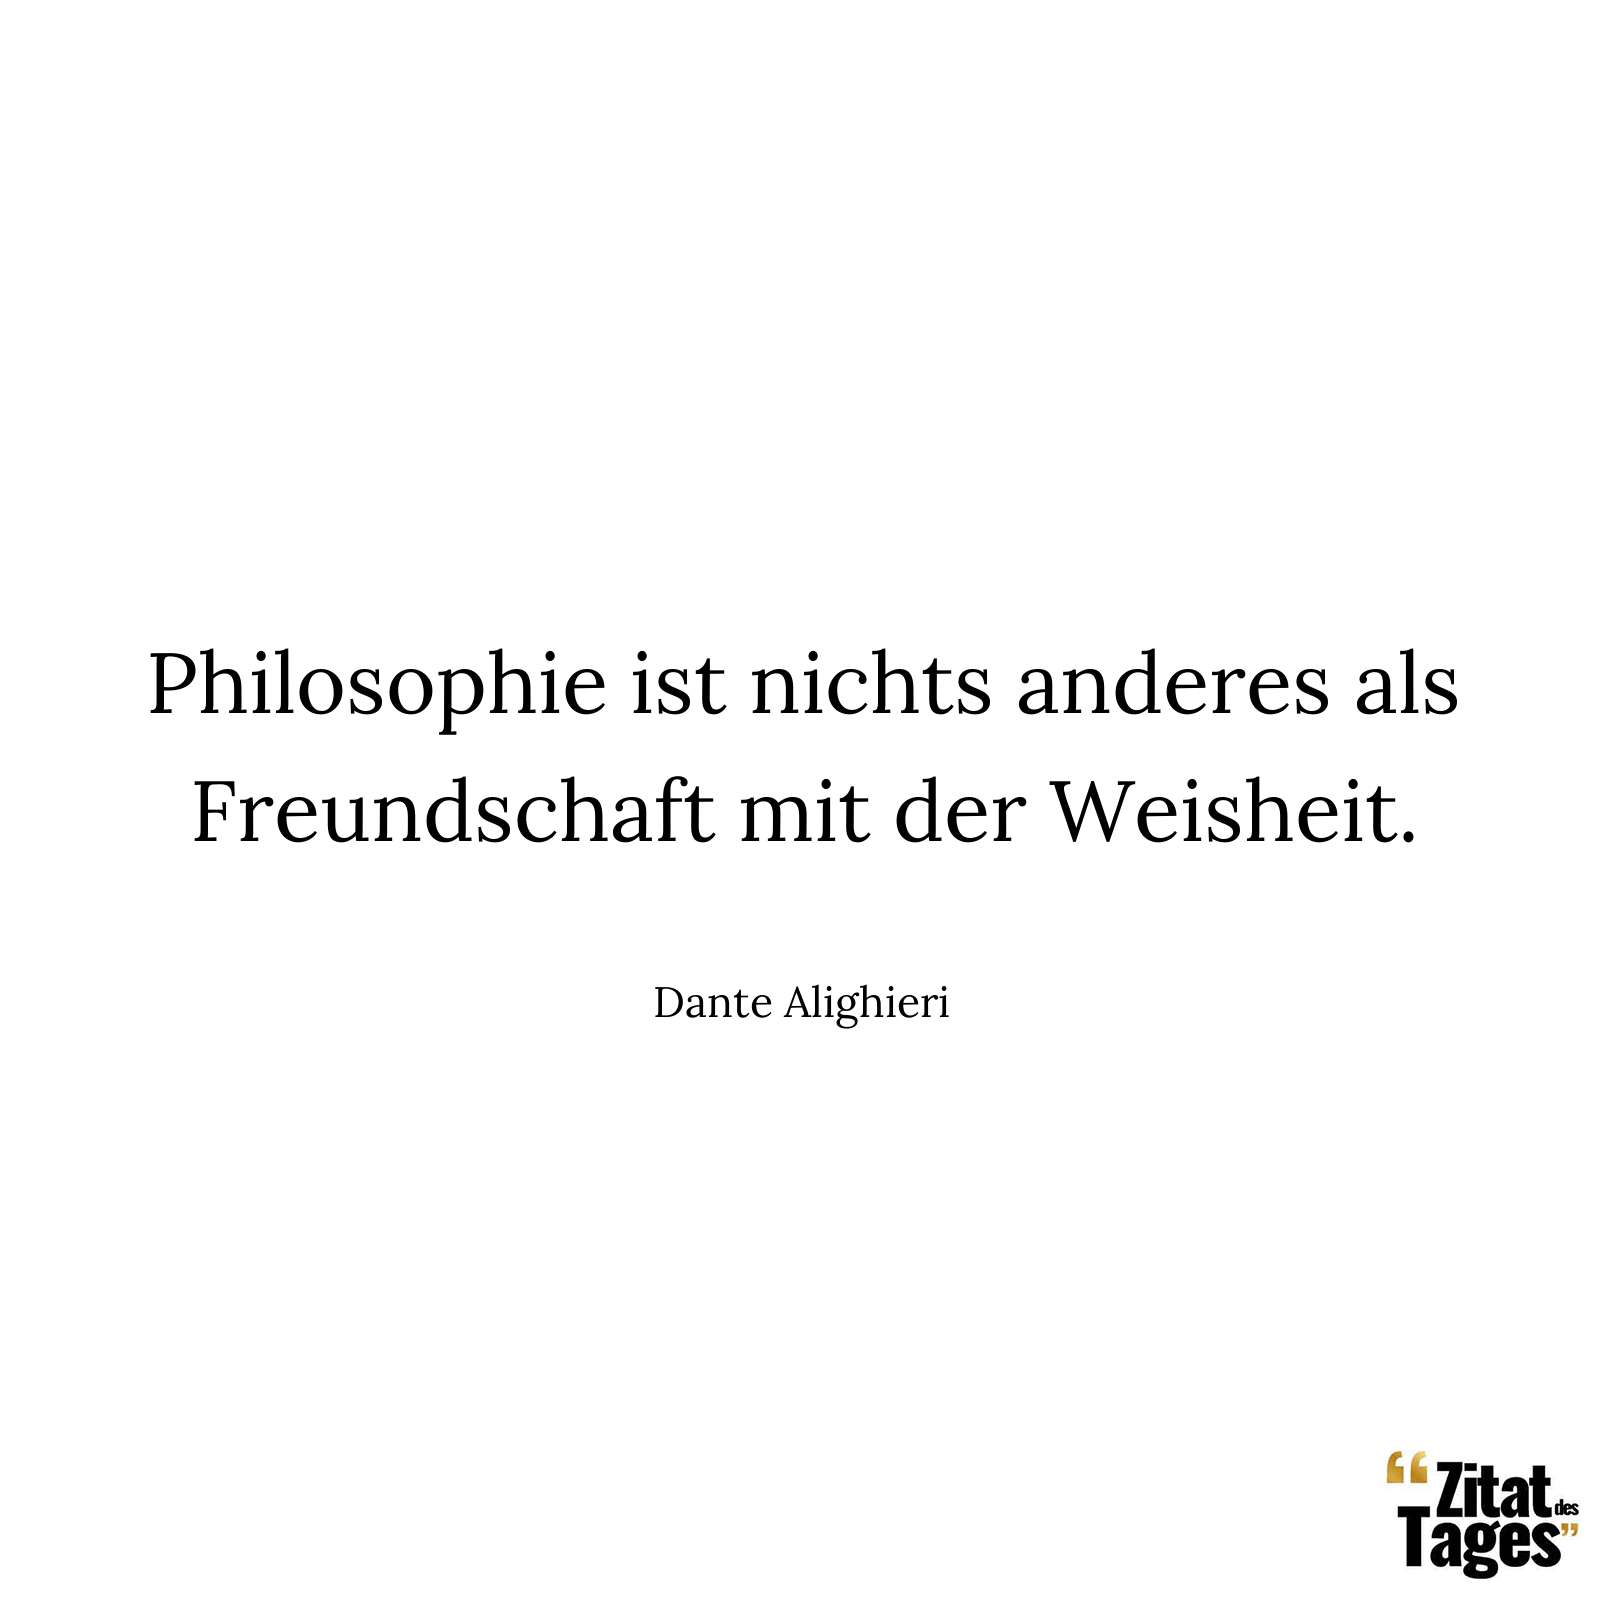 Philosophie ist nichts anderes als Freundschaft mit der Weisheit. - Dante Alighieri